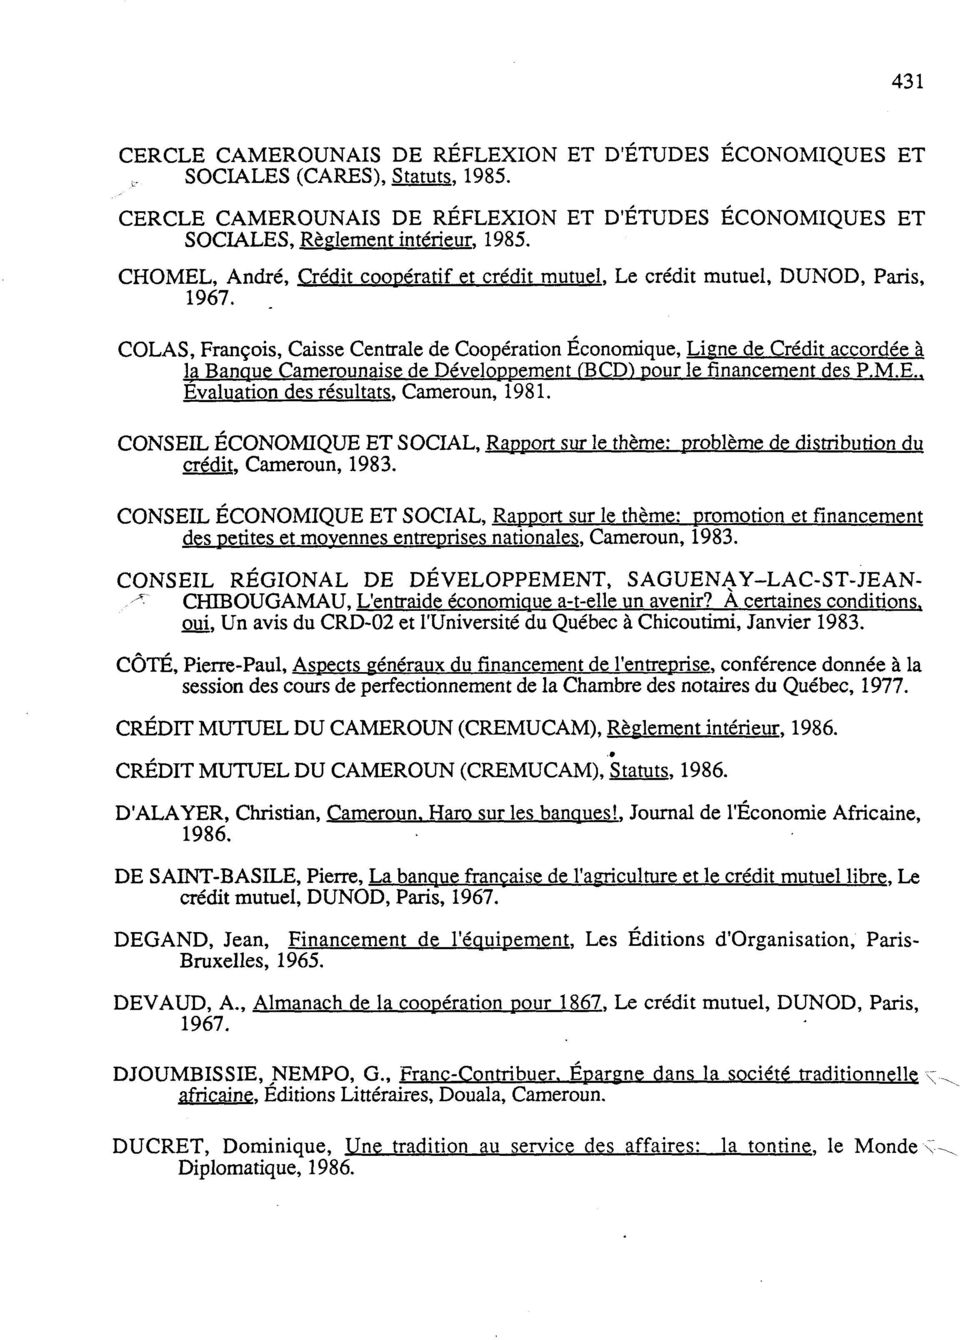 . Evaluation des résultats. Cameroun, 1981. CONSEIL ÉCONOMIQUE ET SOCIAL, Rapport sur le thème: problème de distribution du crédit. Cameroun, 1983.